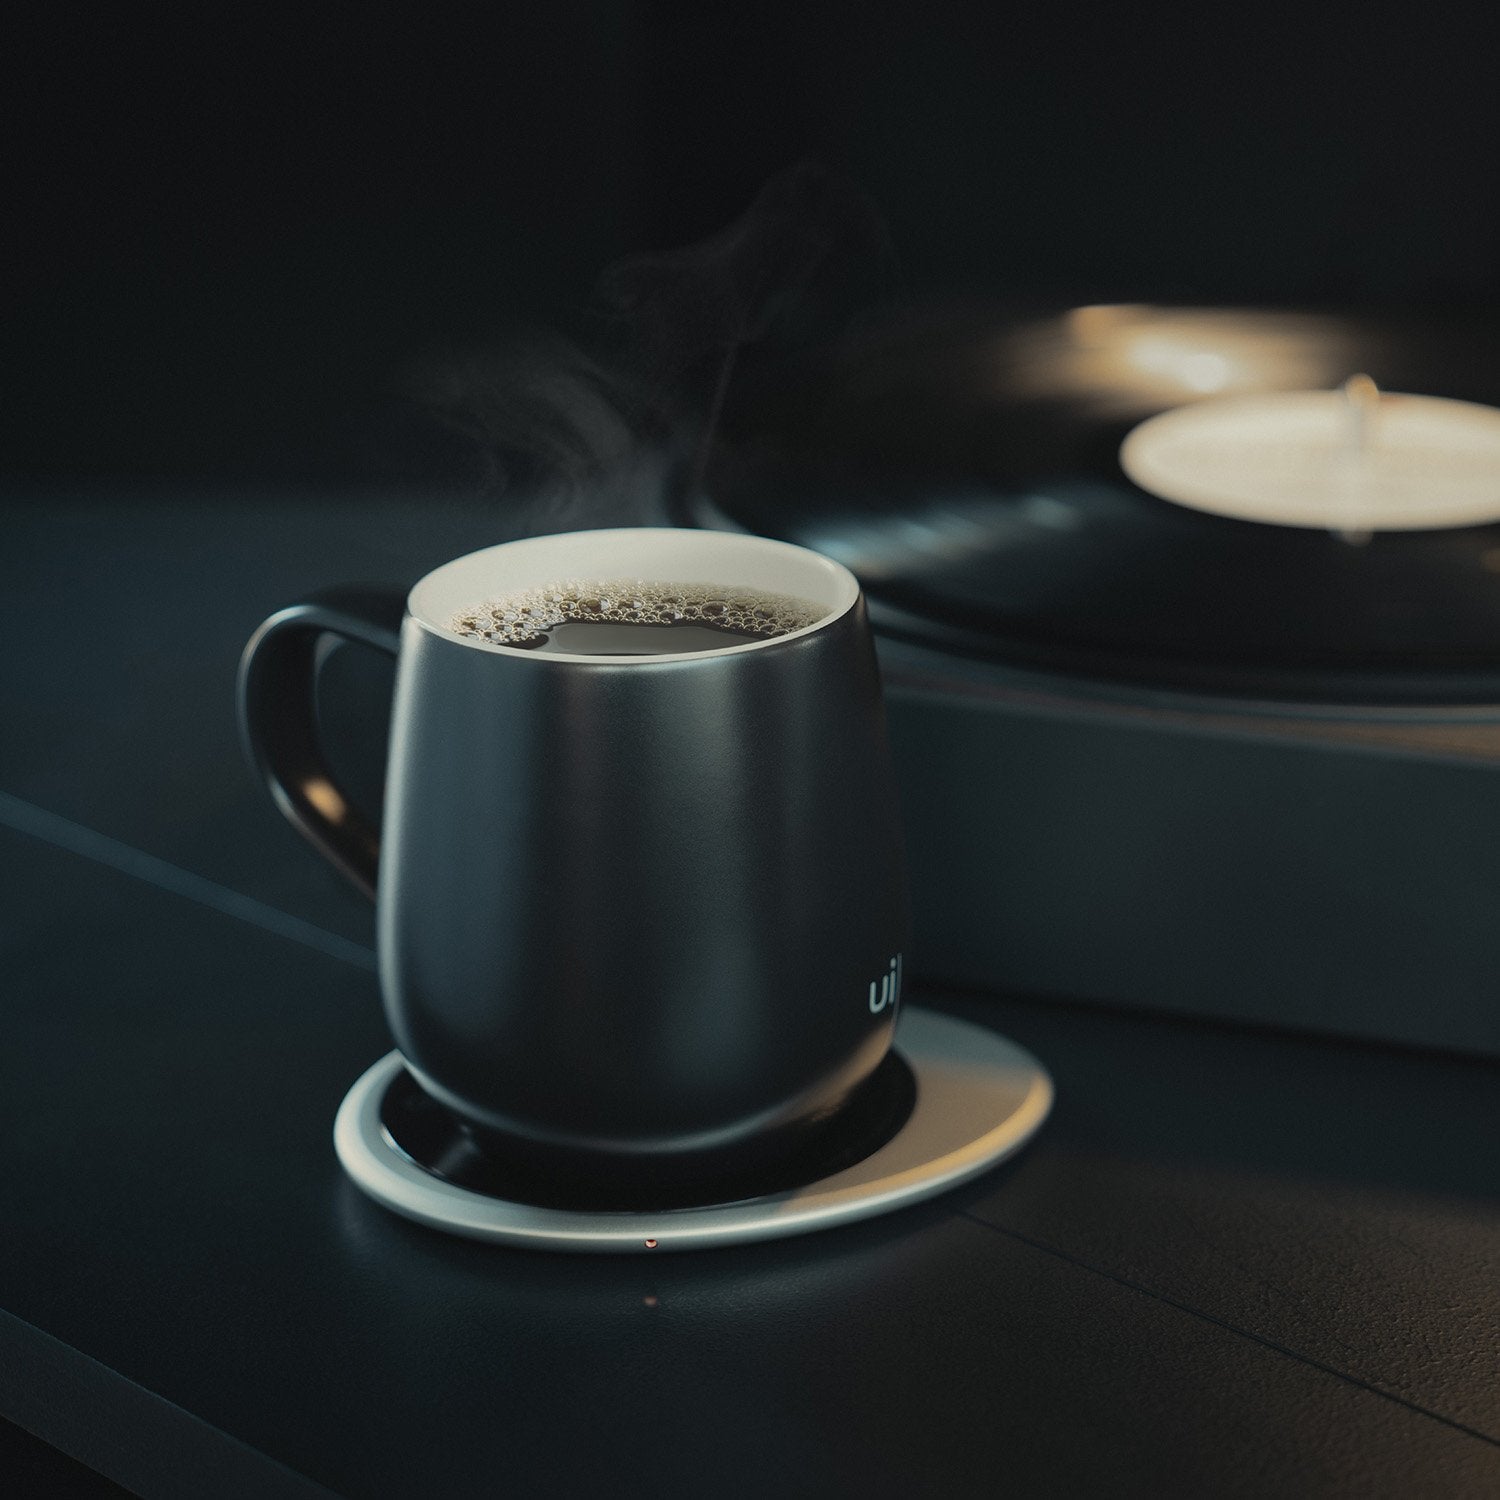 Black mug with hot tea on heating pad